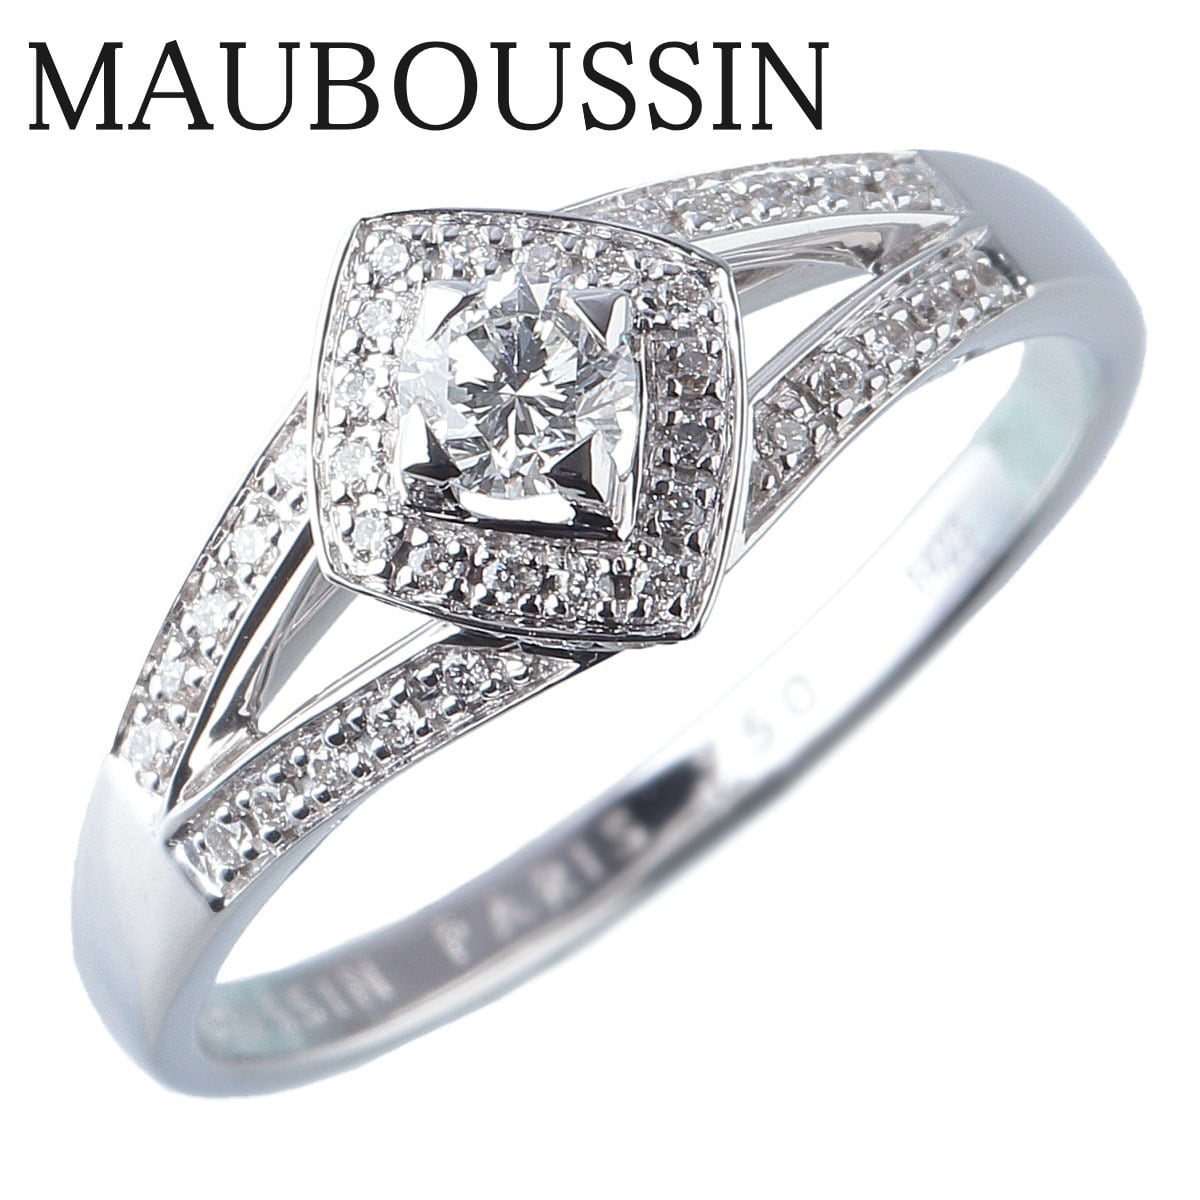 ◆MAUBOUSSIN モーブッサン極上天然ダイヤモンドリング750WG 14号